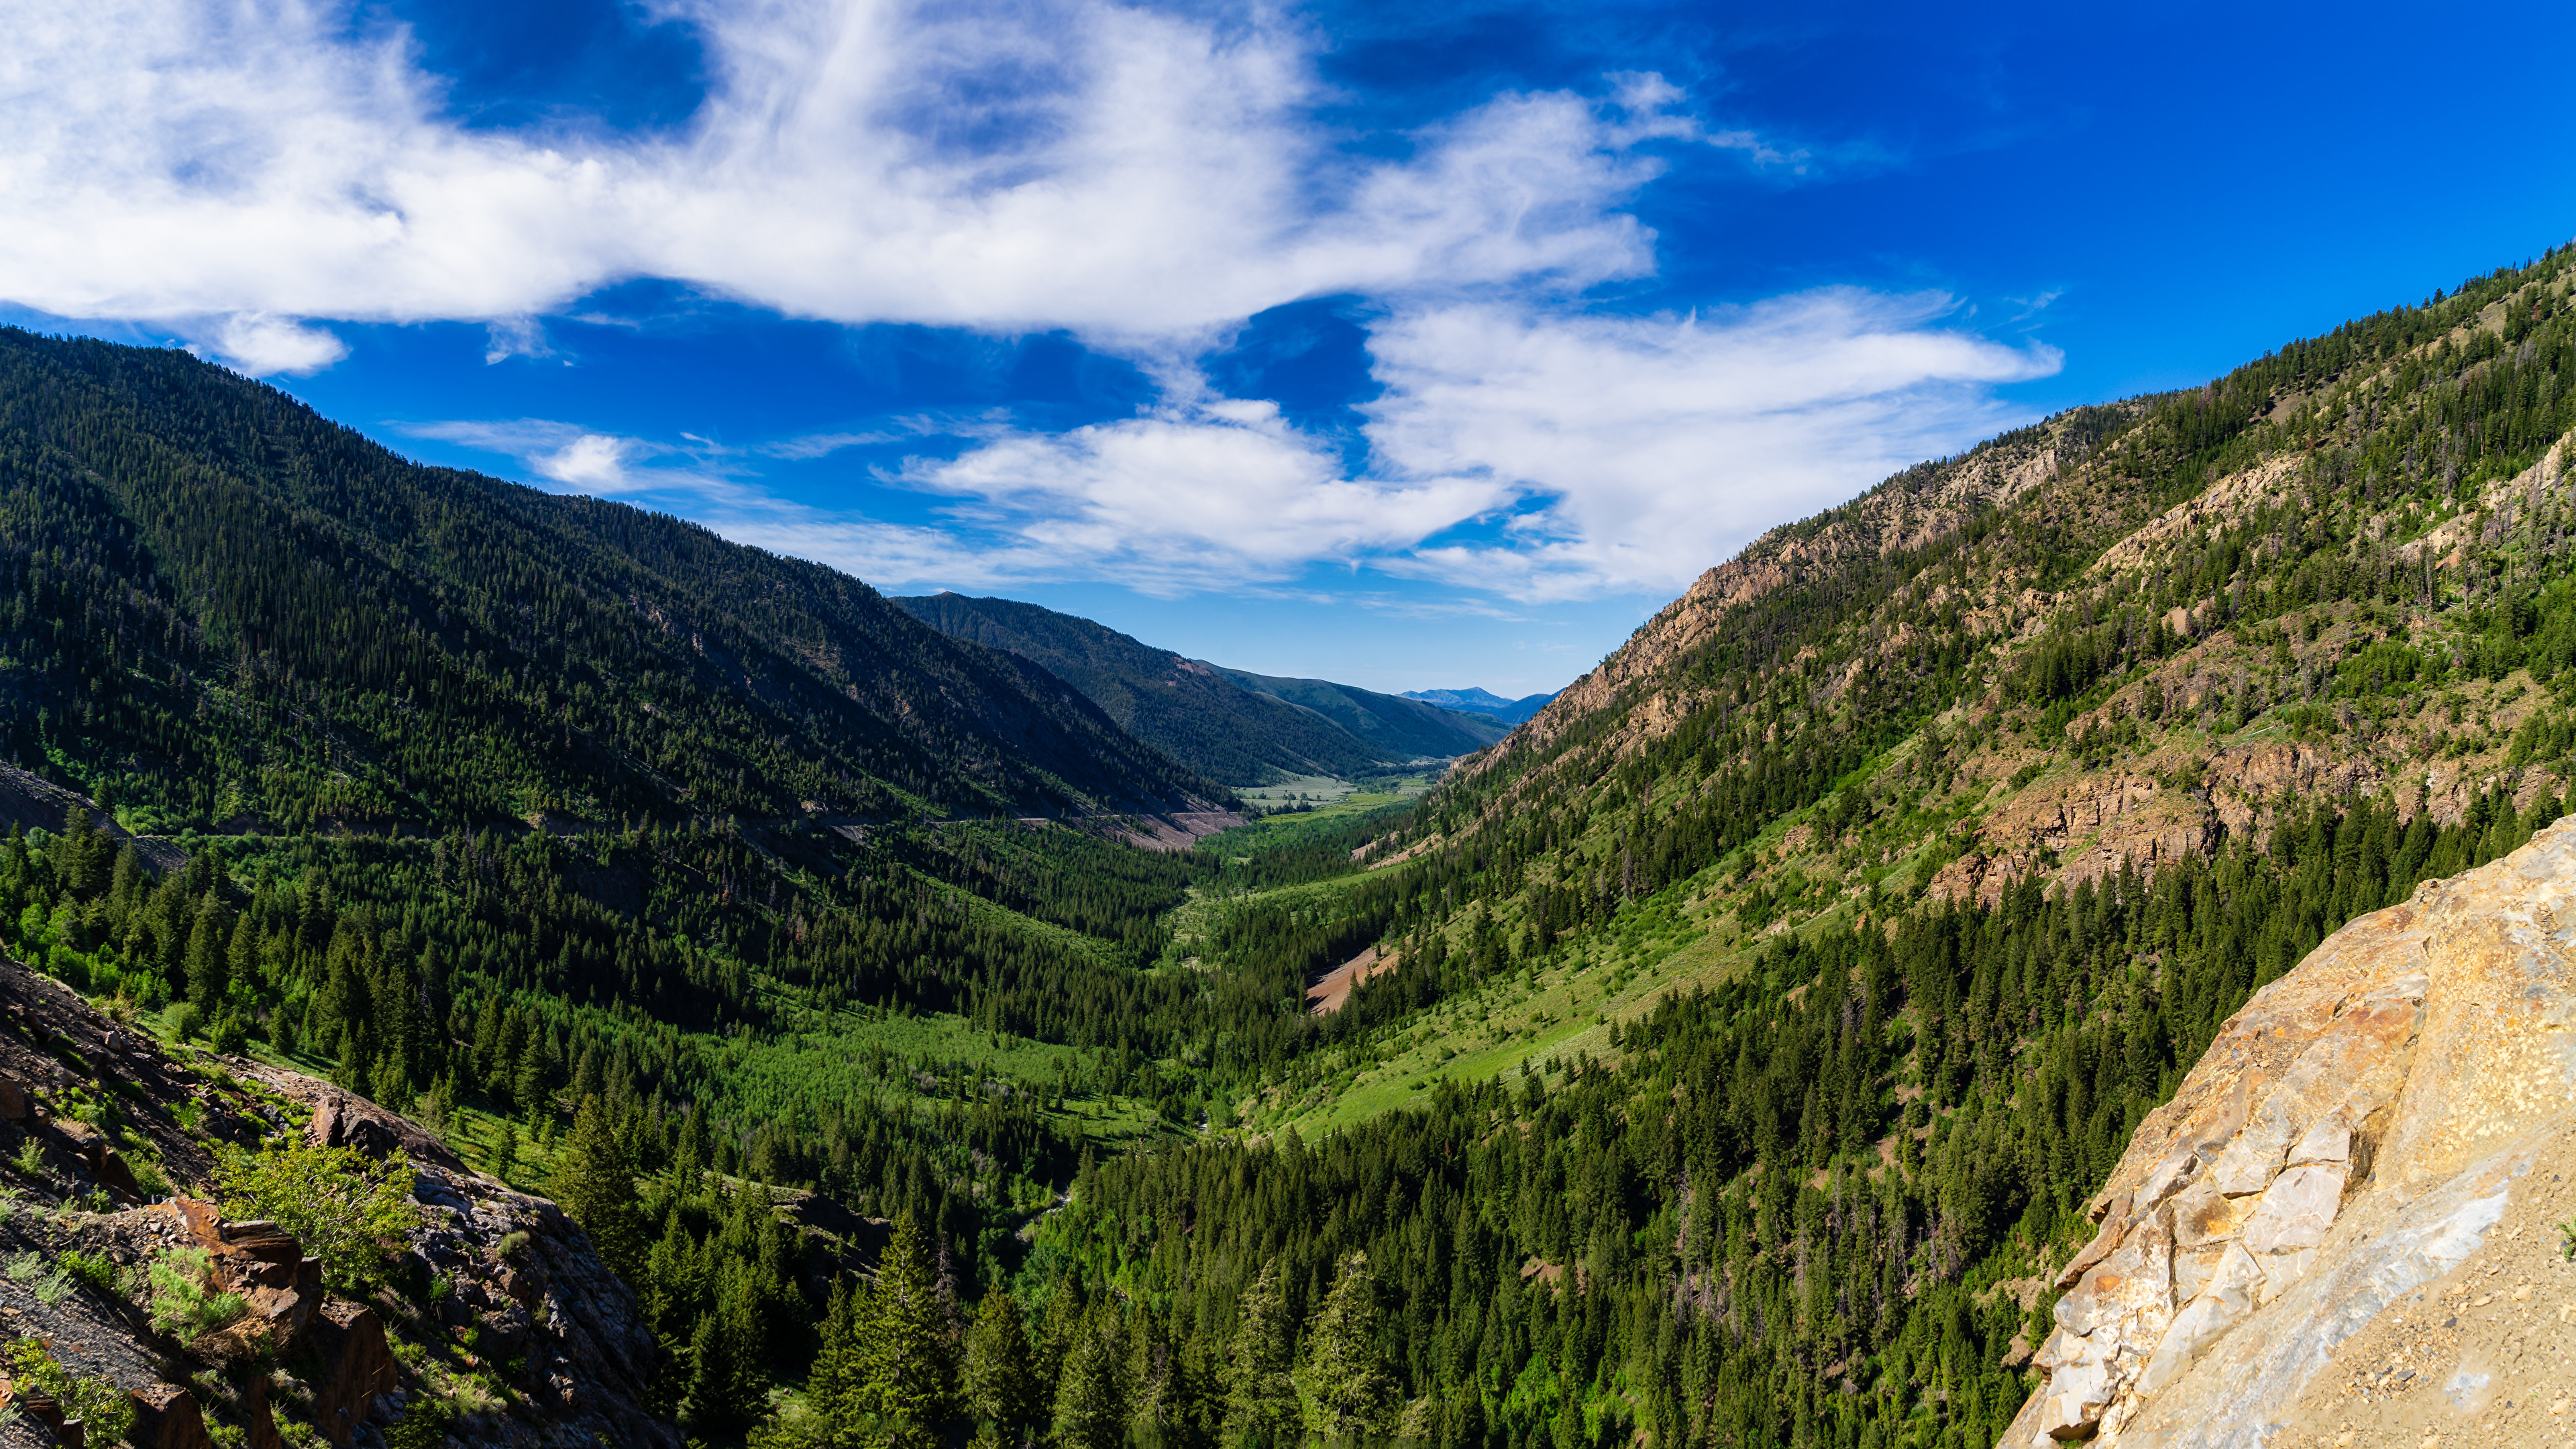 Фото США Idaho, Sawtooth Range Долина Горы Природа Небо Облака 3840x2160 штаты америка гора облако облачно